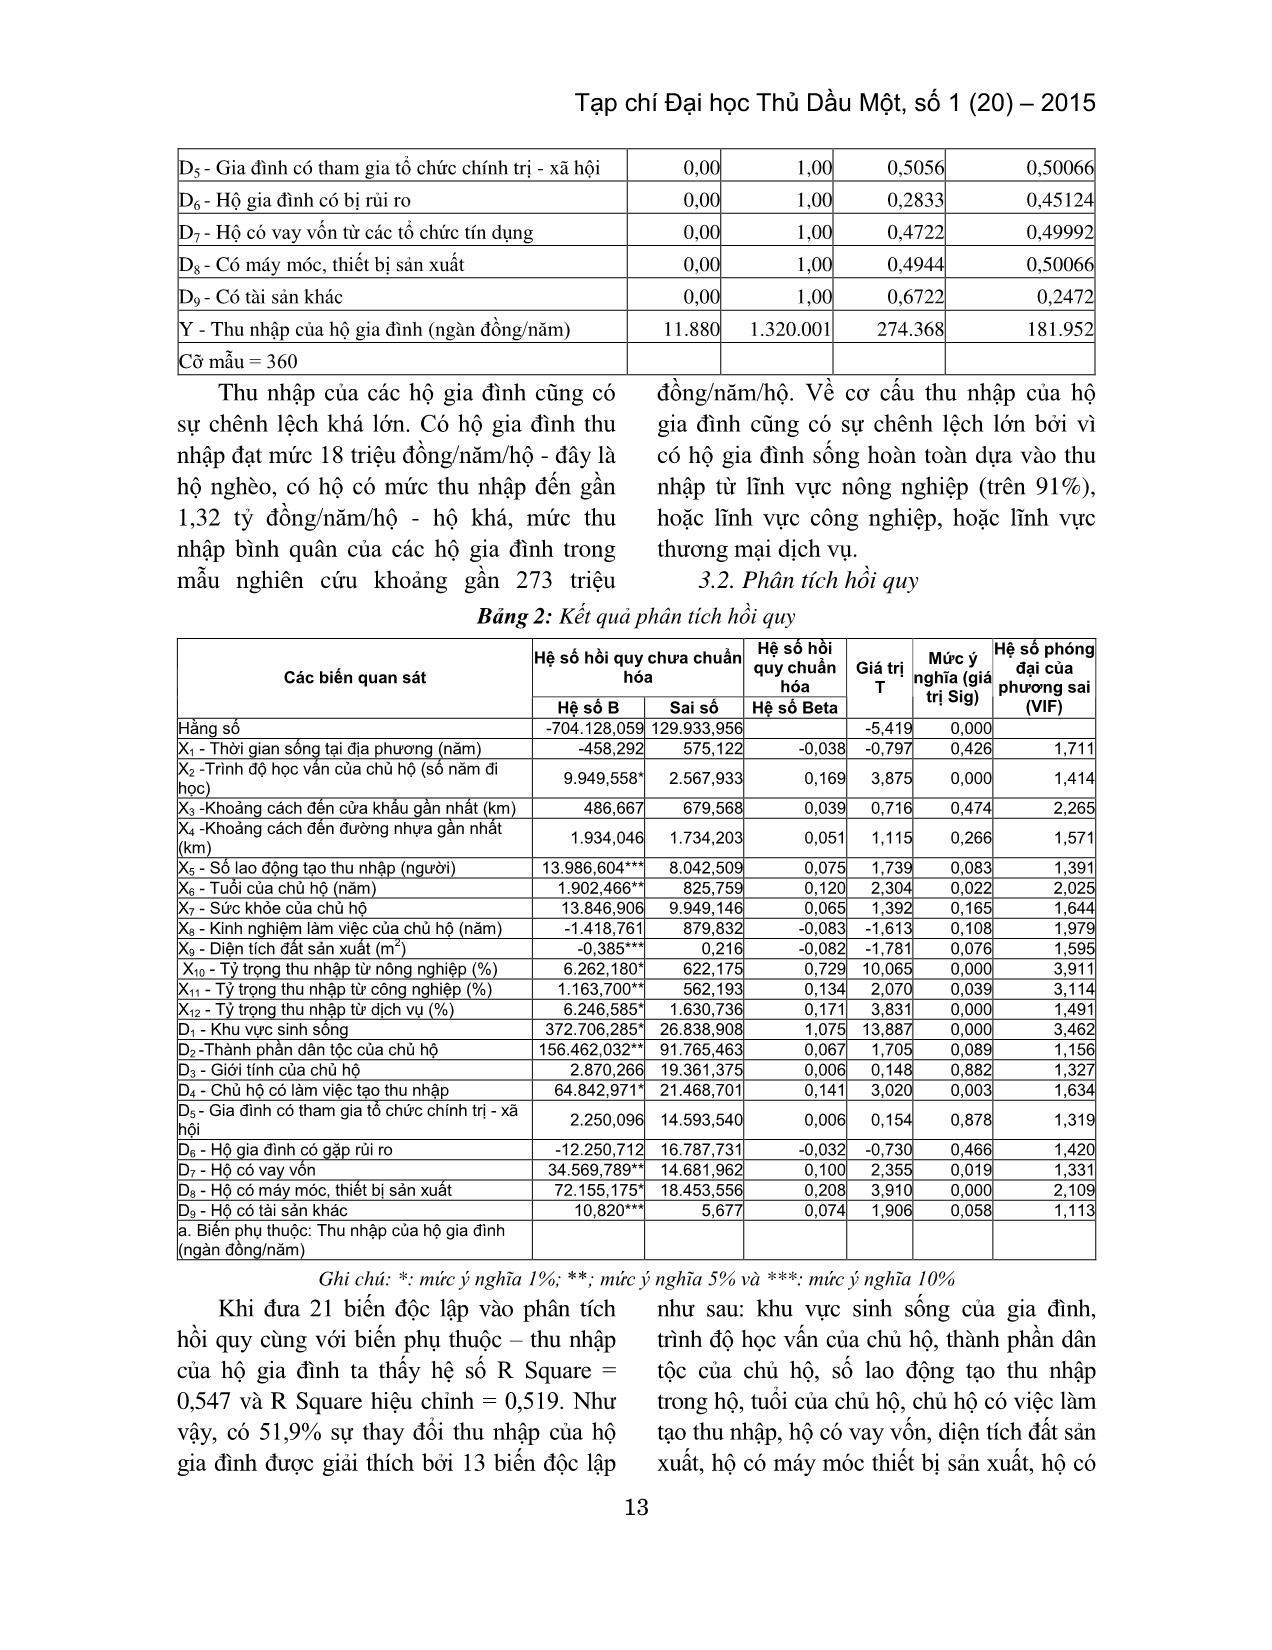 Phân tích thu nhập của hộ gia đình khu vực Đồng Tháp Mười, tỉnh Long An trang 5